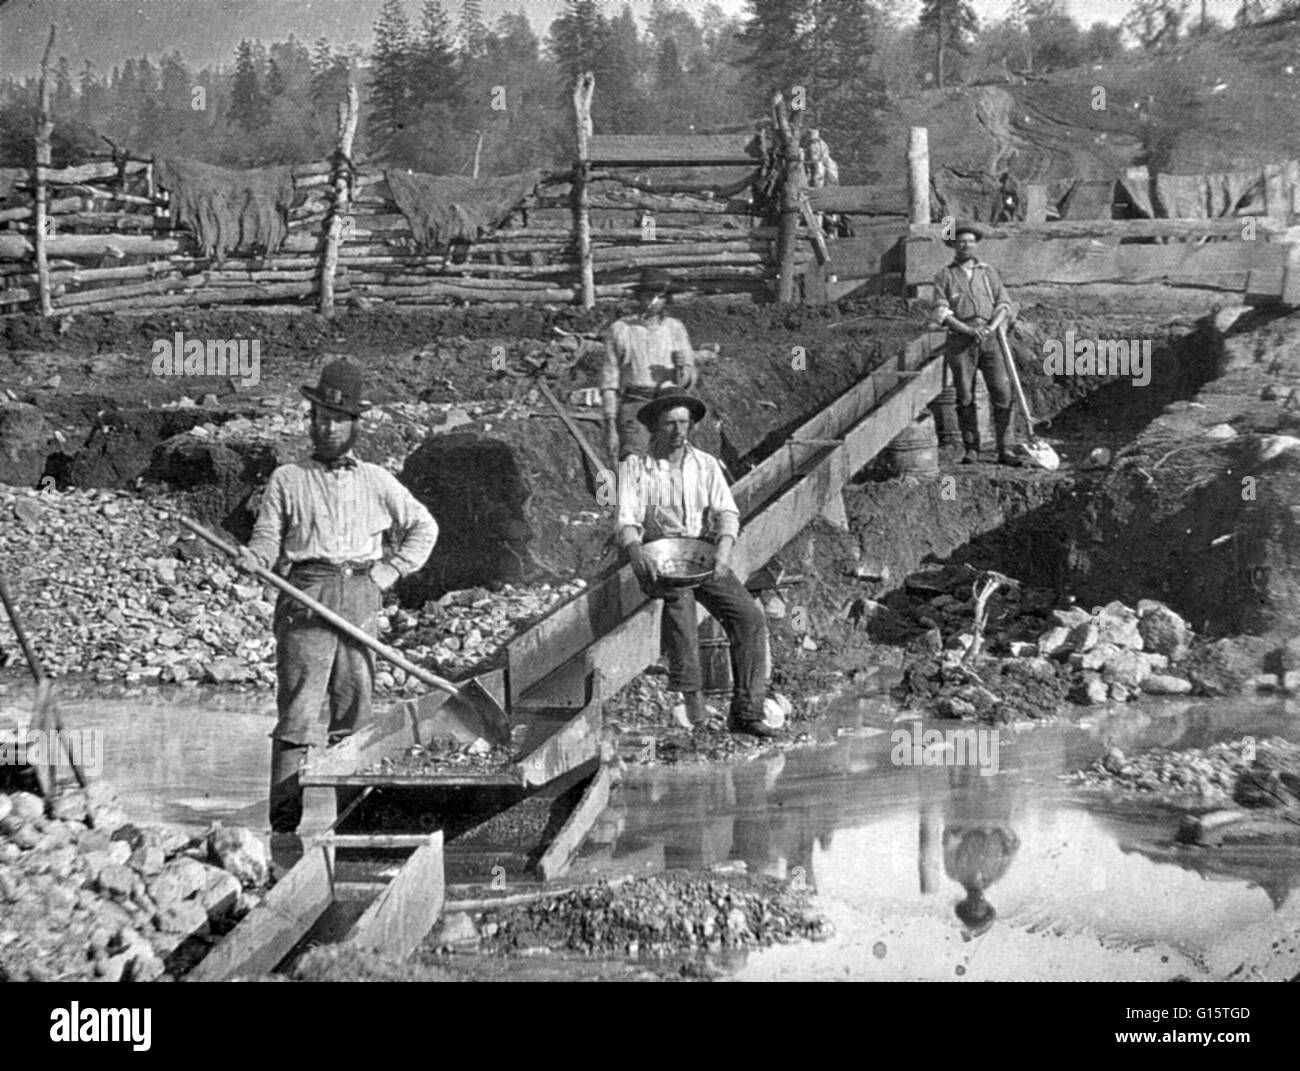 Chercheurs d'or dans l'emplacement non identifiés en Californie, 1850. L'American River est un fleuve d'eau de la Californie system qui court à compter de la crête de la Sierra Nevada à sa confluence avec la rivière Sacramento de Sacramento, en Californie. L Banque D'Images